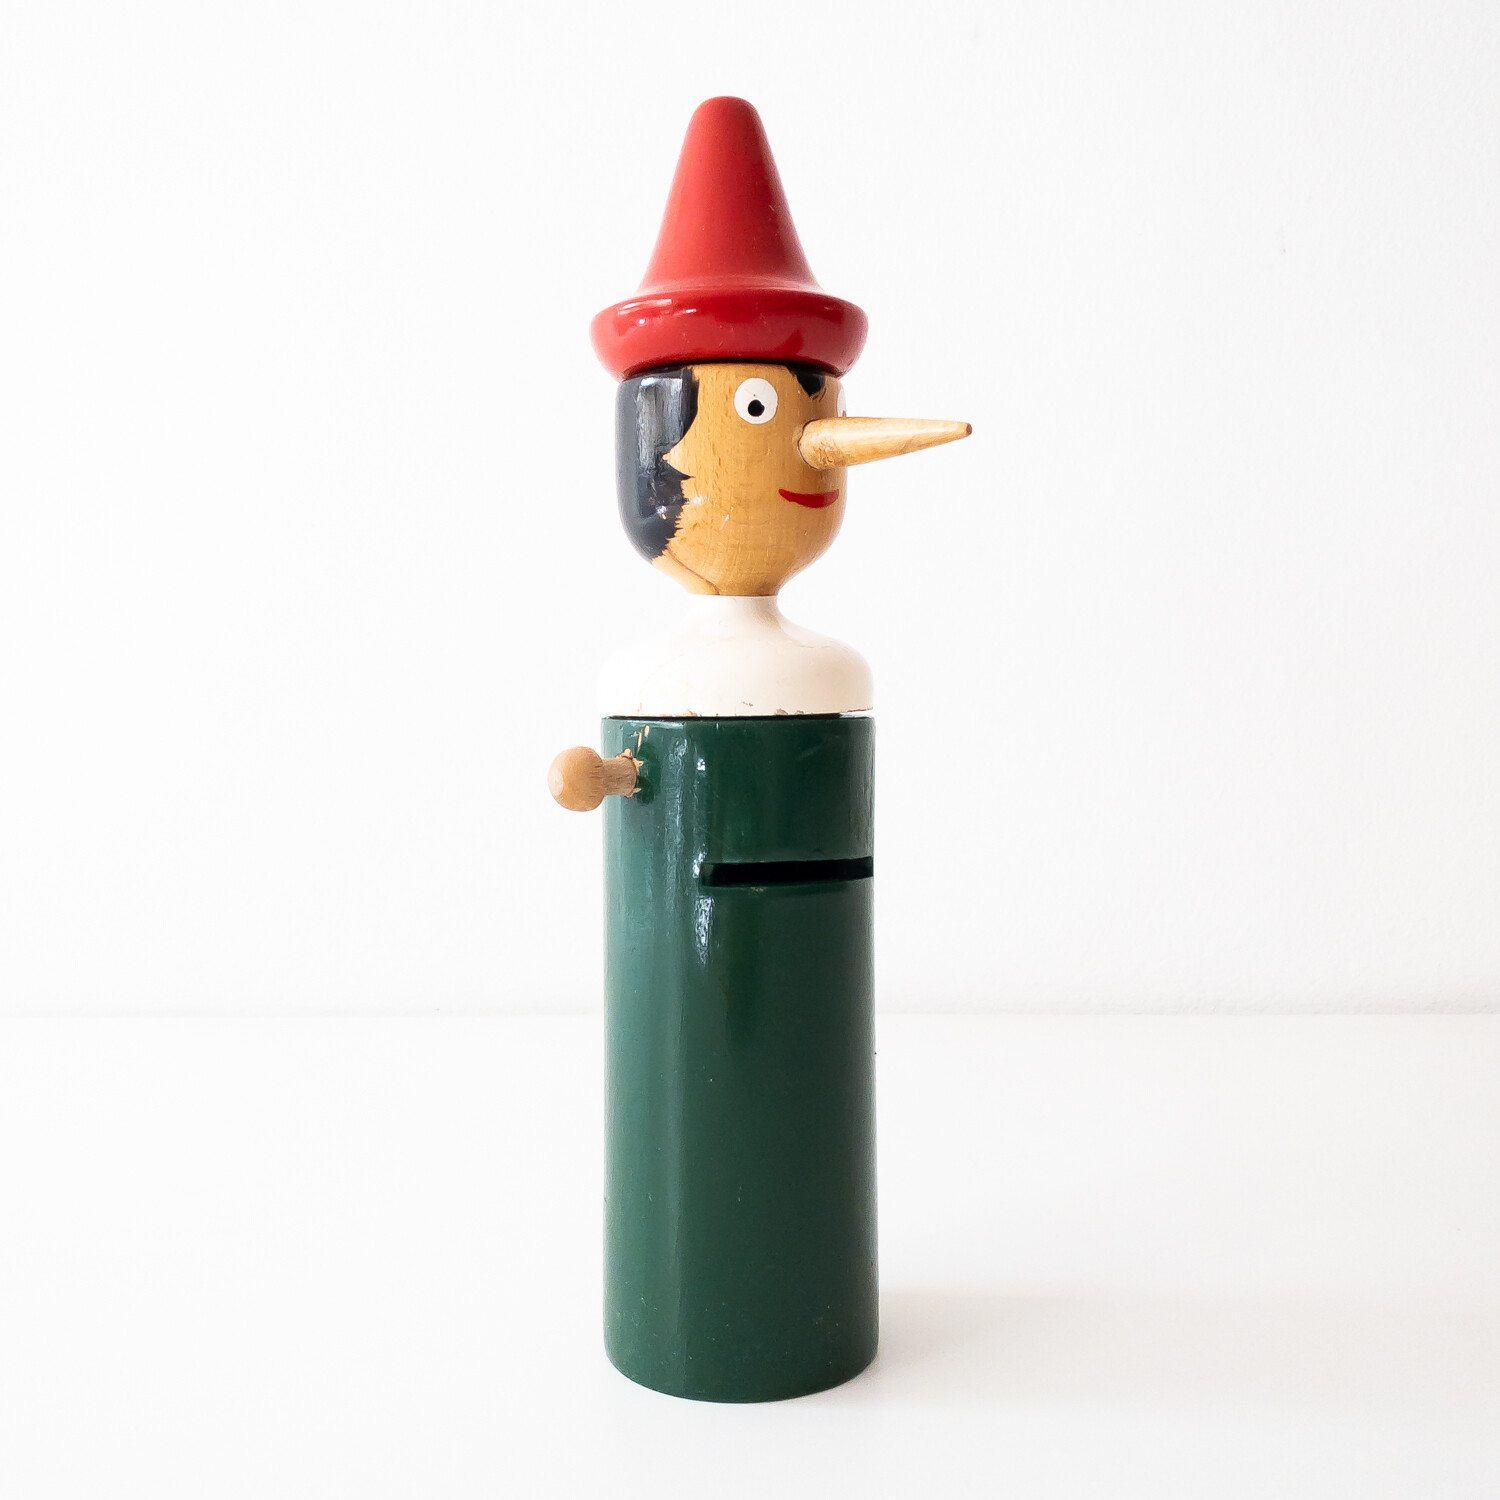 Pinocchio salvadanaio in legno